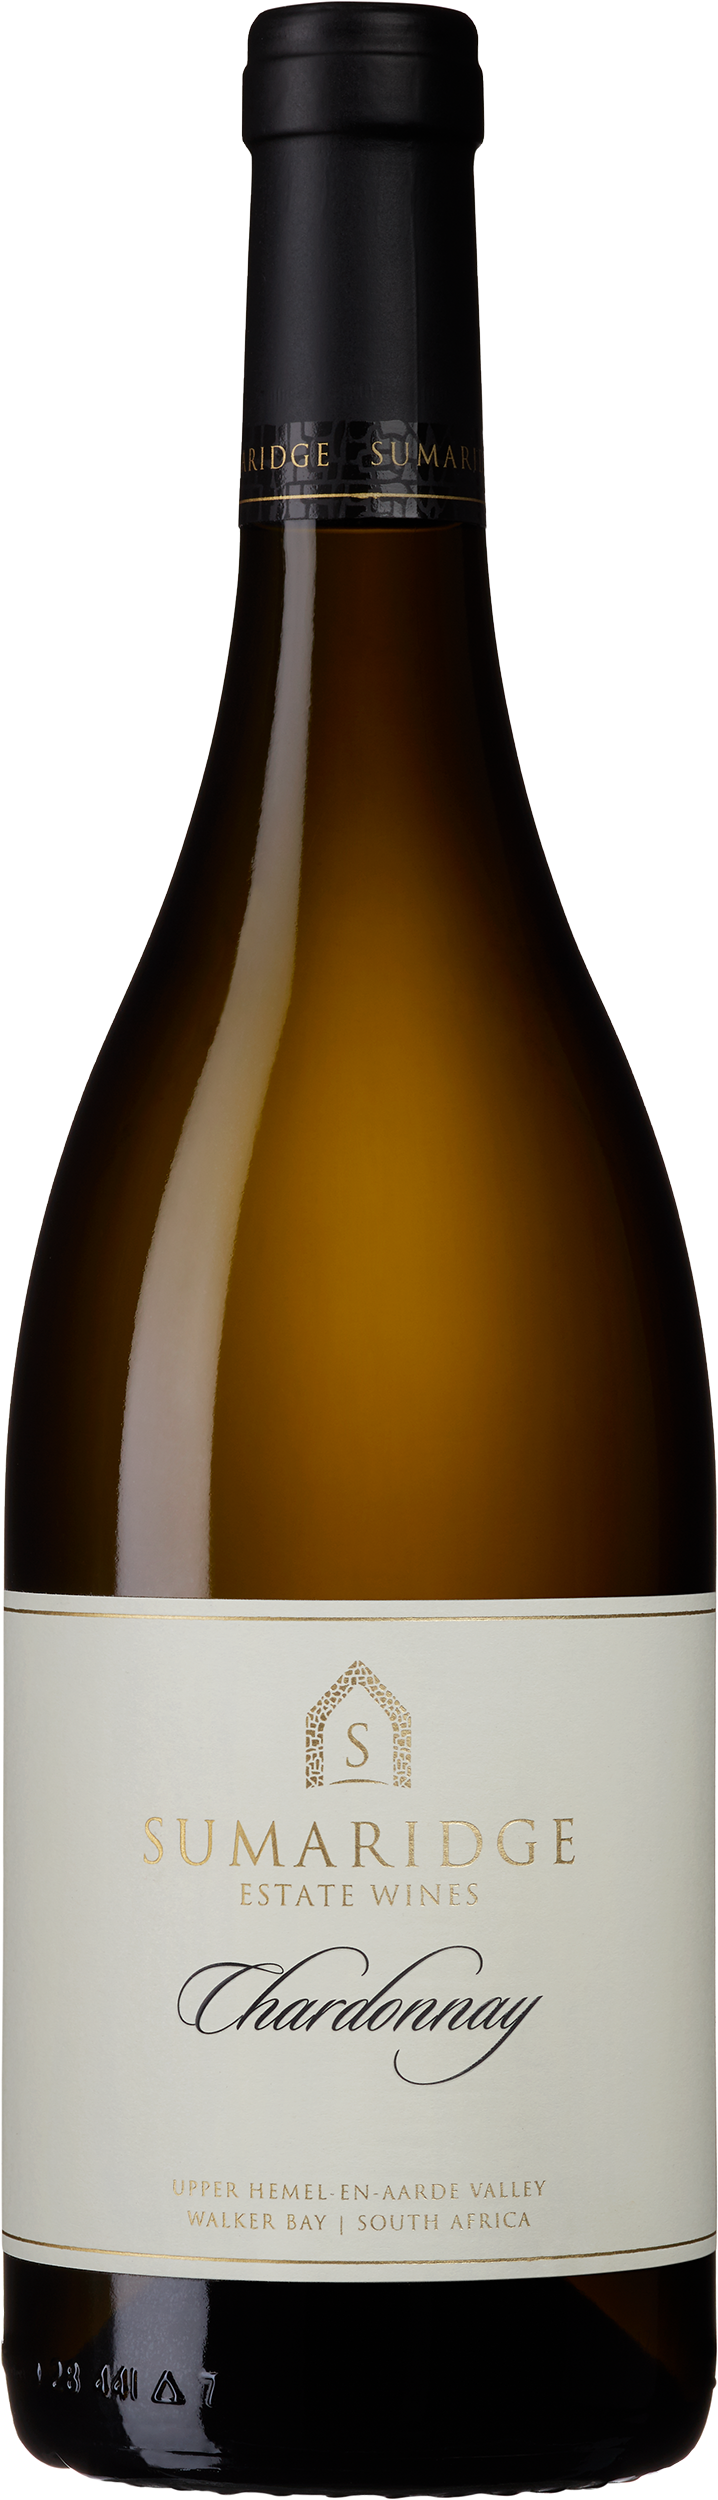 Sumaridge Chardonnay 2020